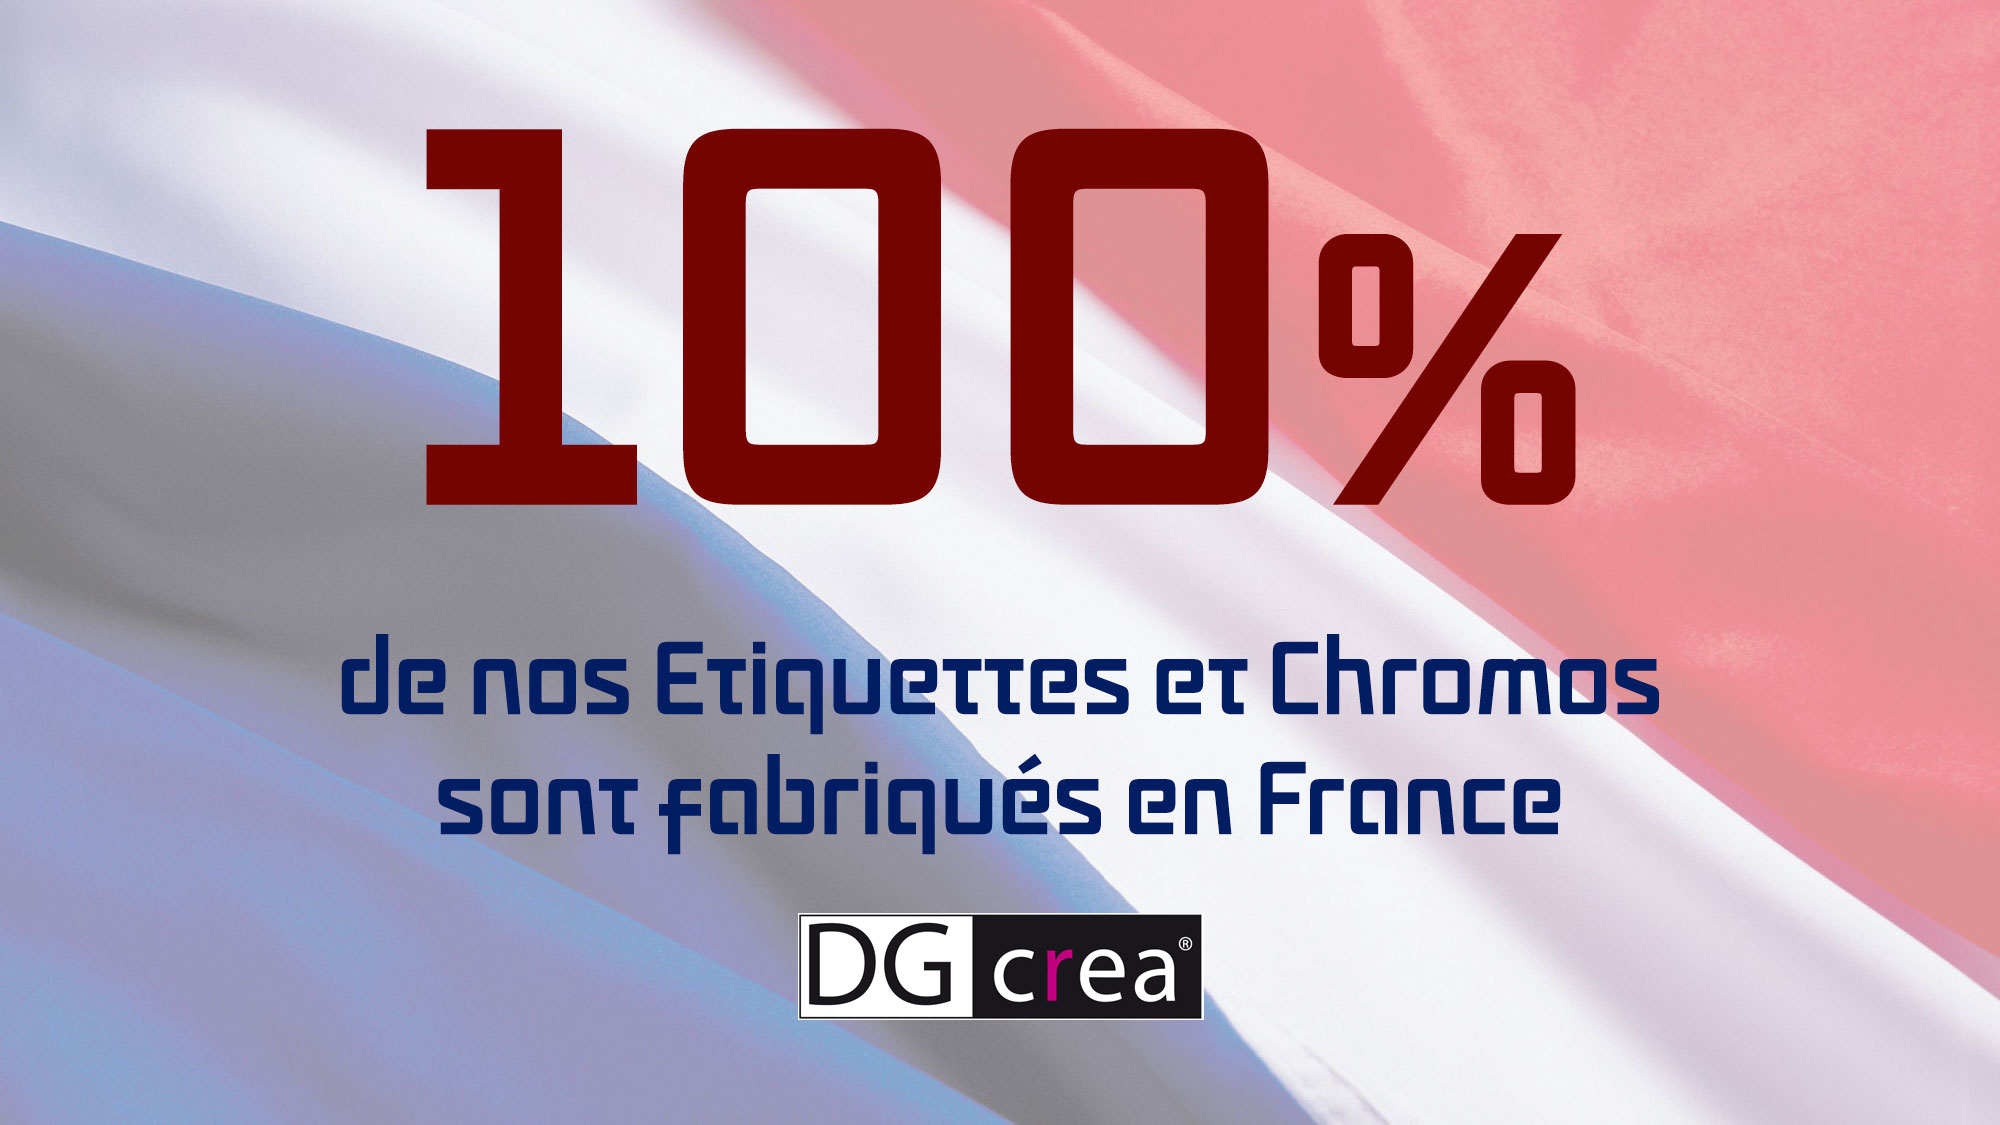 DG CREA Etiquettes Chromos Made in France